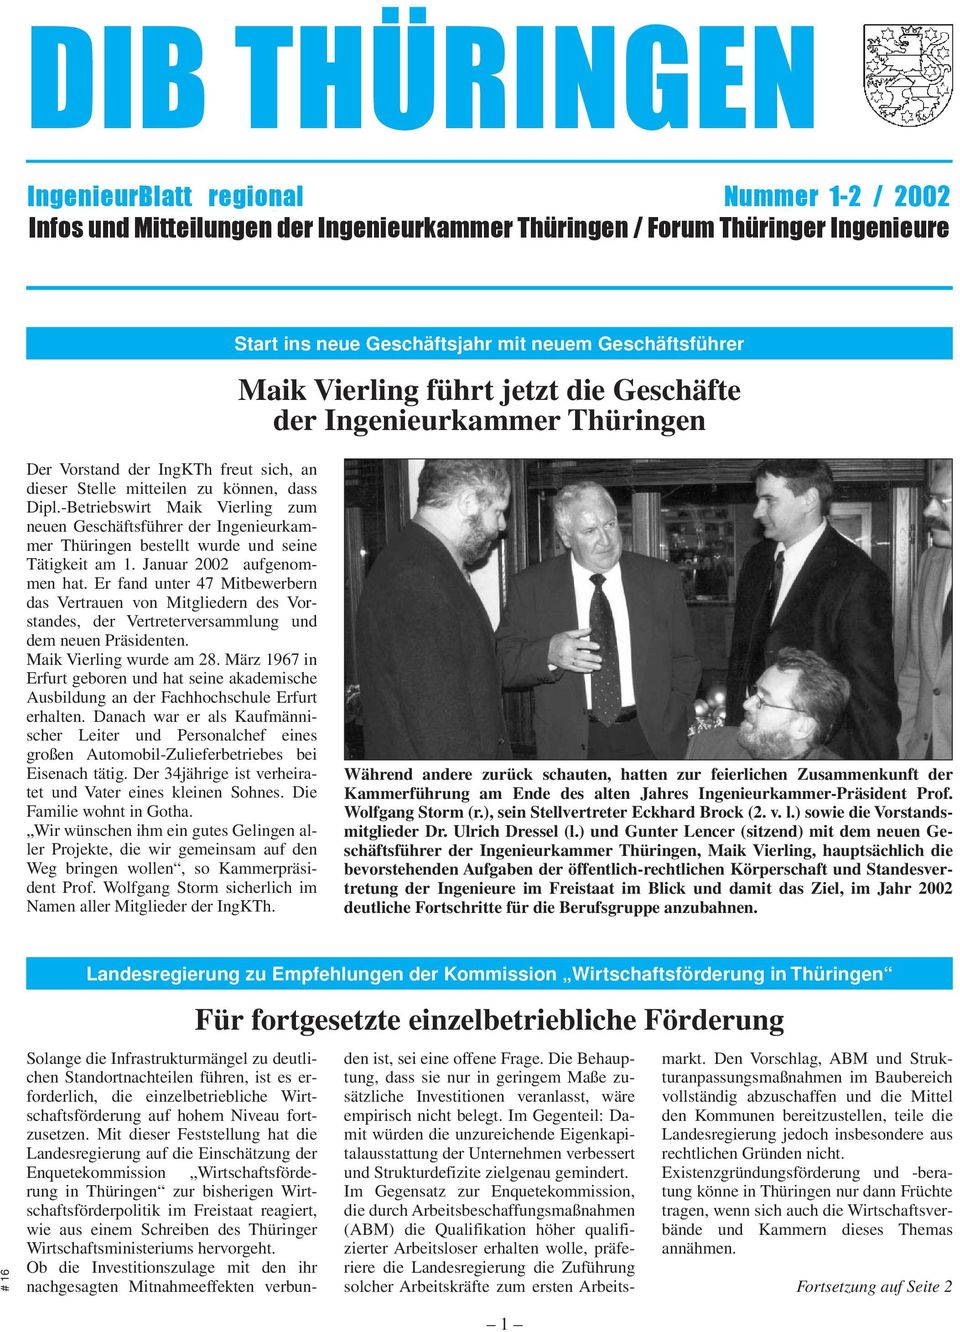 -Betriebswirt Maik Vierling zum neuen Geschäftsführer der Ingenieurkammer Thüringen bestellt wurde und seine Tätigkeit am 1. Januar 2002 aufgenommen hat.